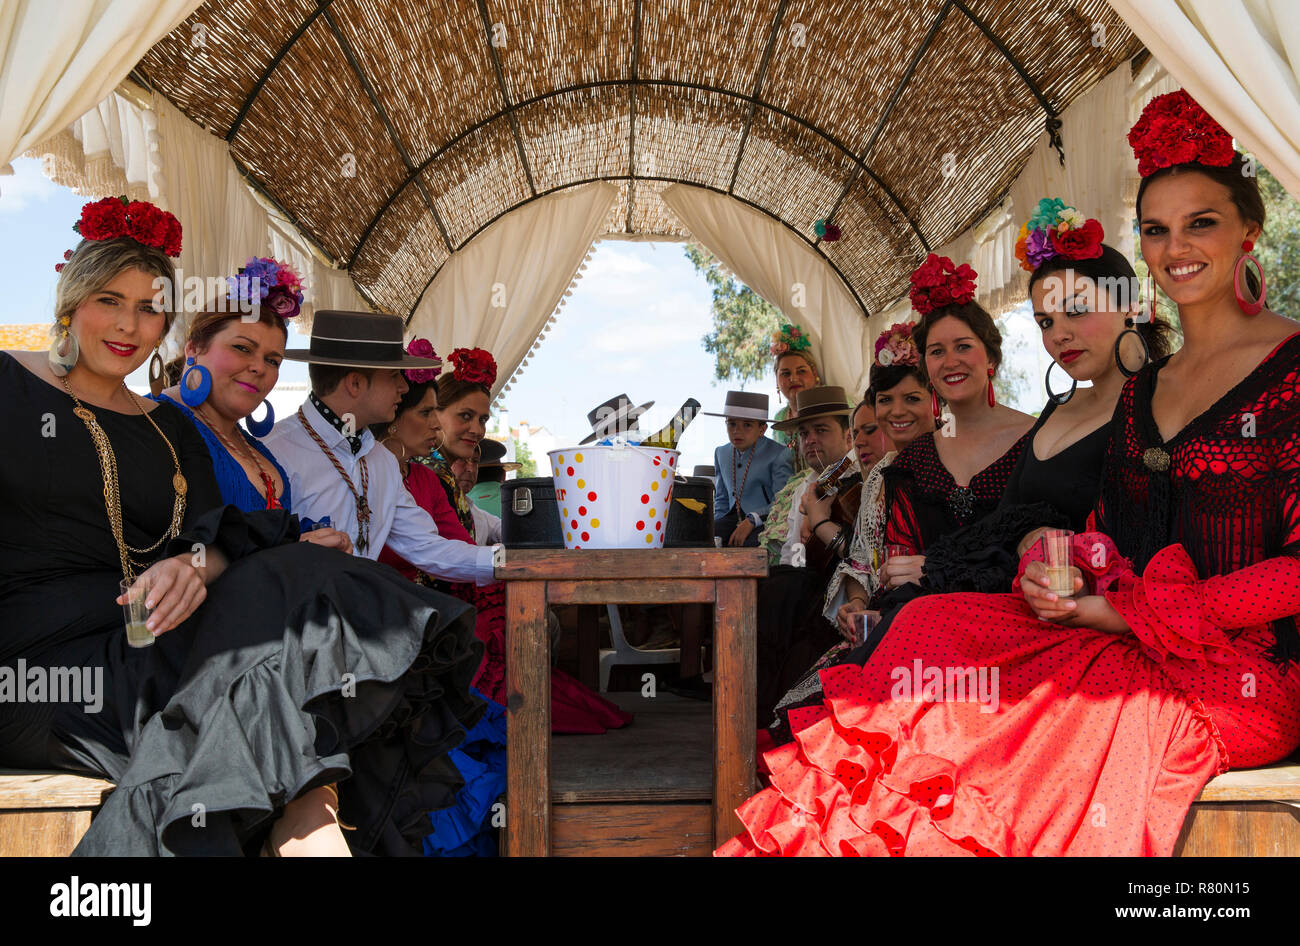 Les femmes portant des robes gitanes et magnifiquement habillé des hommes au cours de l'assemblée la Pentecôte pèlerinage d'El Rocío. La province de Huelva, Andalousie, espagne. Banque D'Images